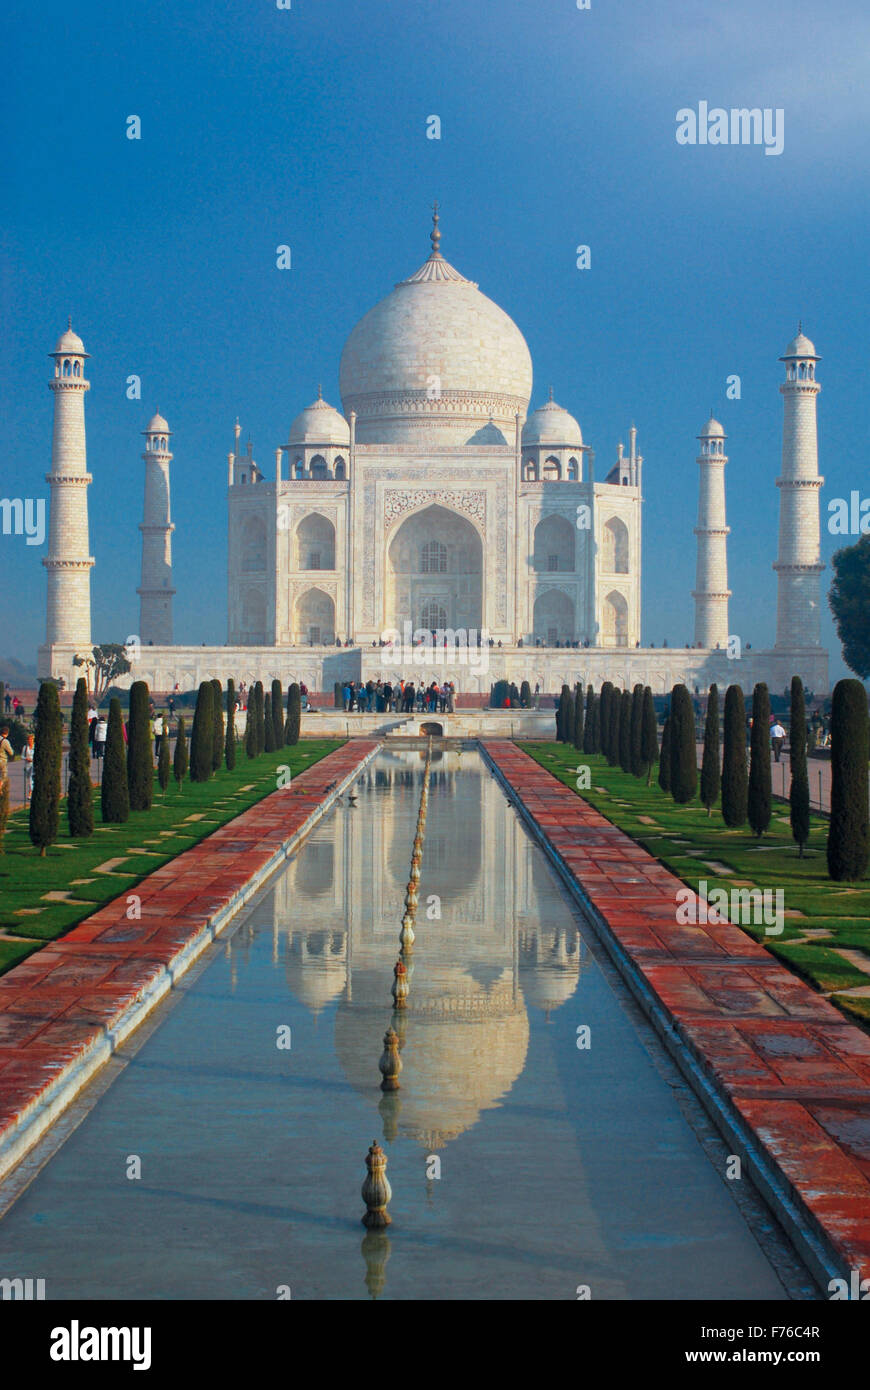 Taj Mahal, mausolée de marbre blanc, merveille du monde, site classé au patrimoine mondial de l'UNESCO, Agra, Uttar Pradesh, Inde, Asie Banque D'Images